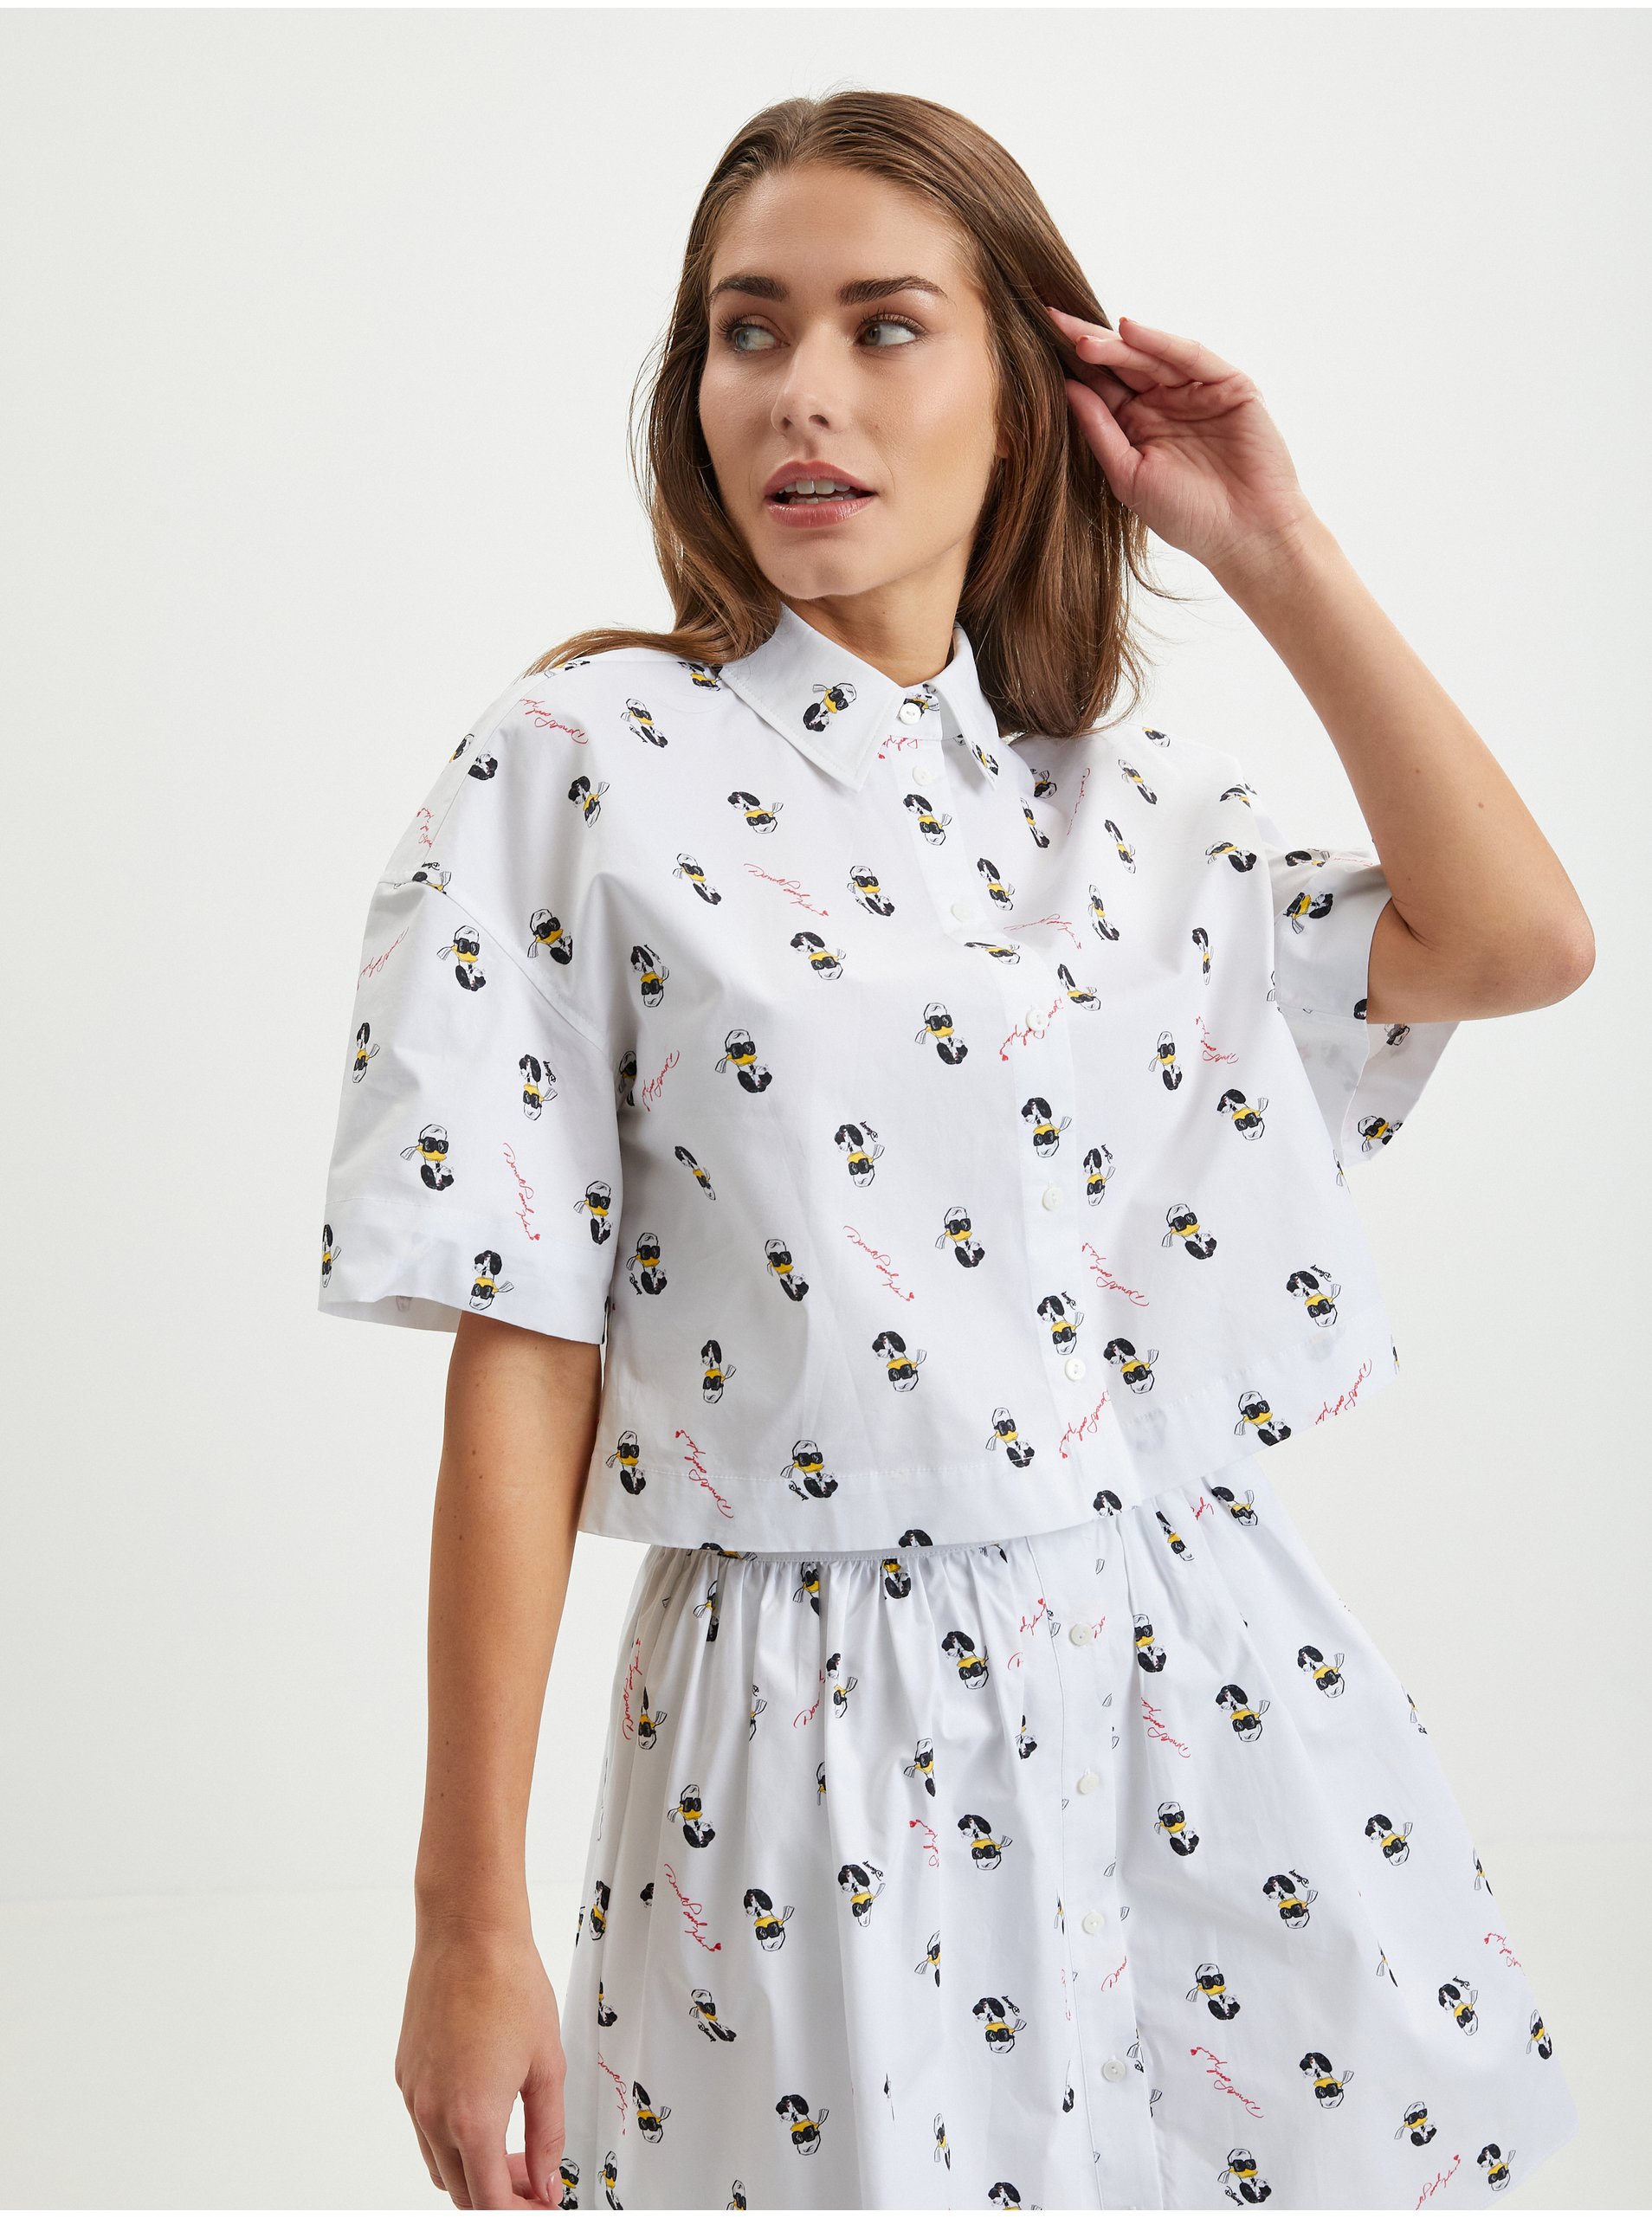 E-shop Biela dámska vzorovaná košeľa KARL LAGERFELD x Disney